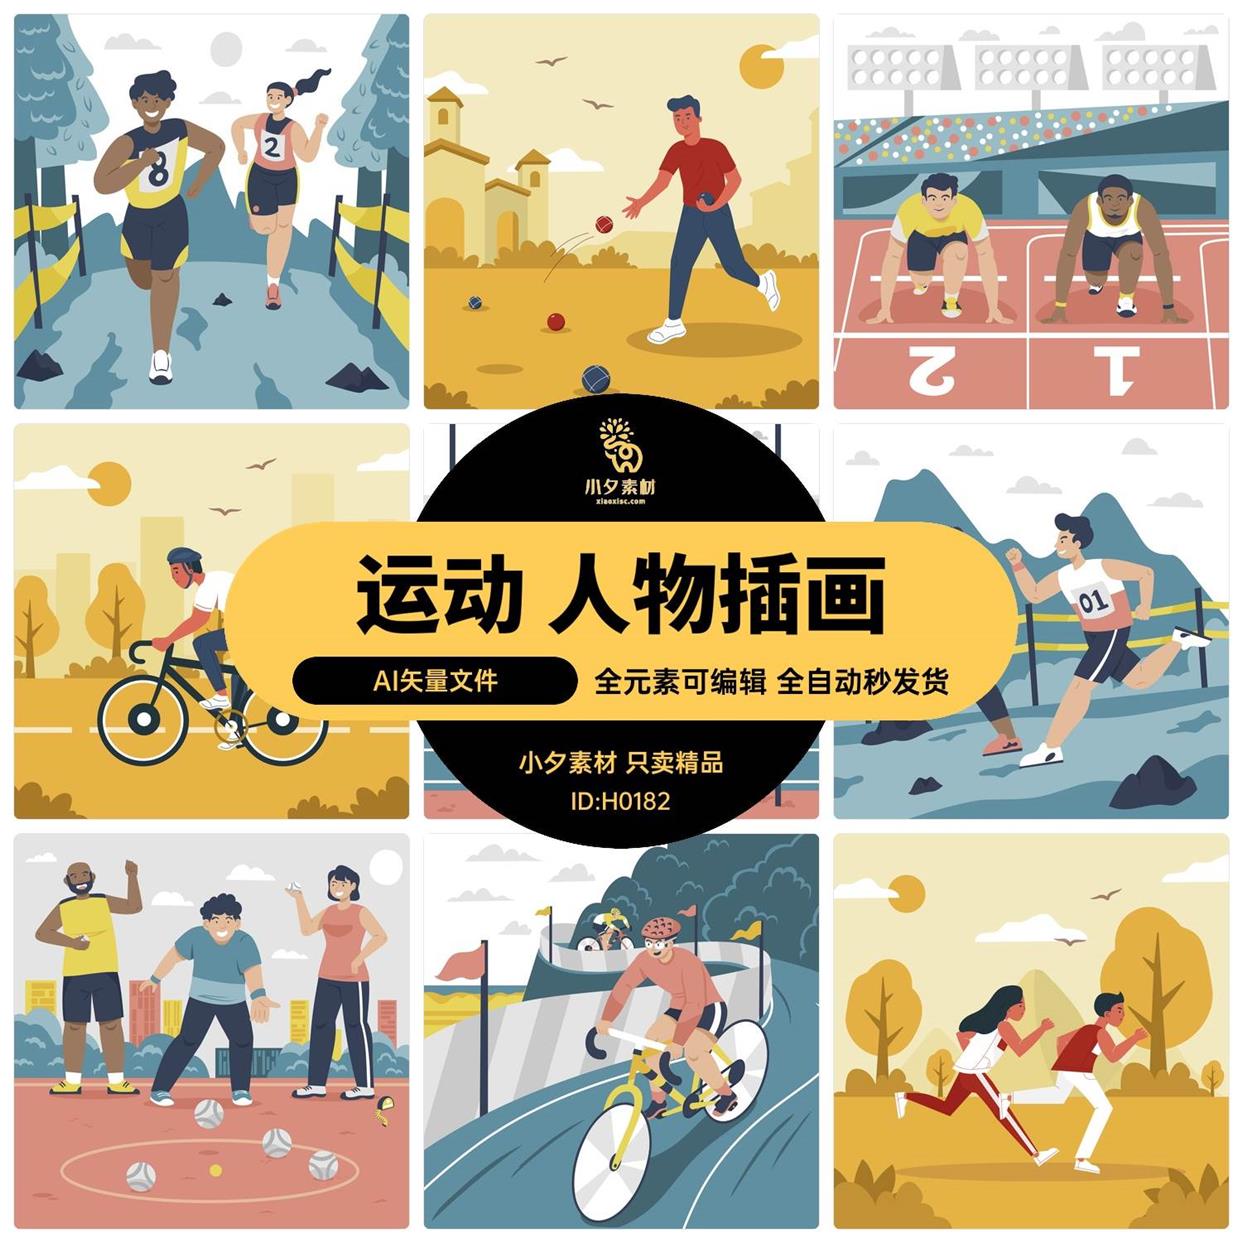 卡通扁平小人校园运动会跑步自行车比赛场景插画矢量设计素材